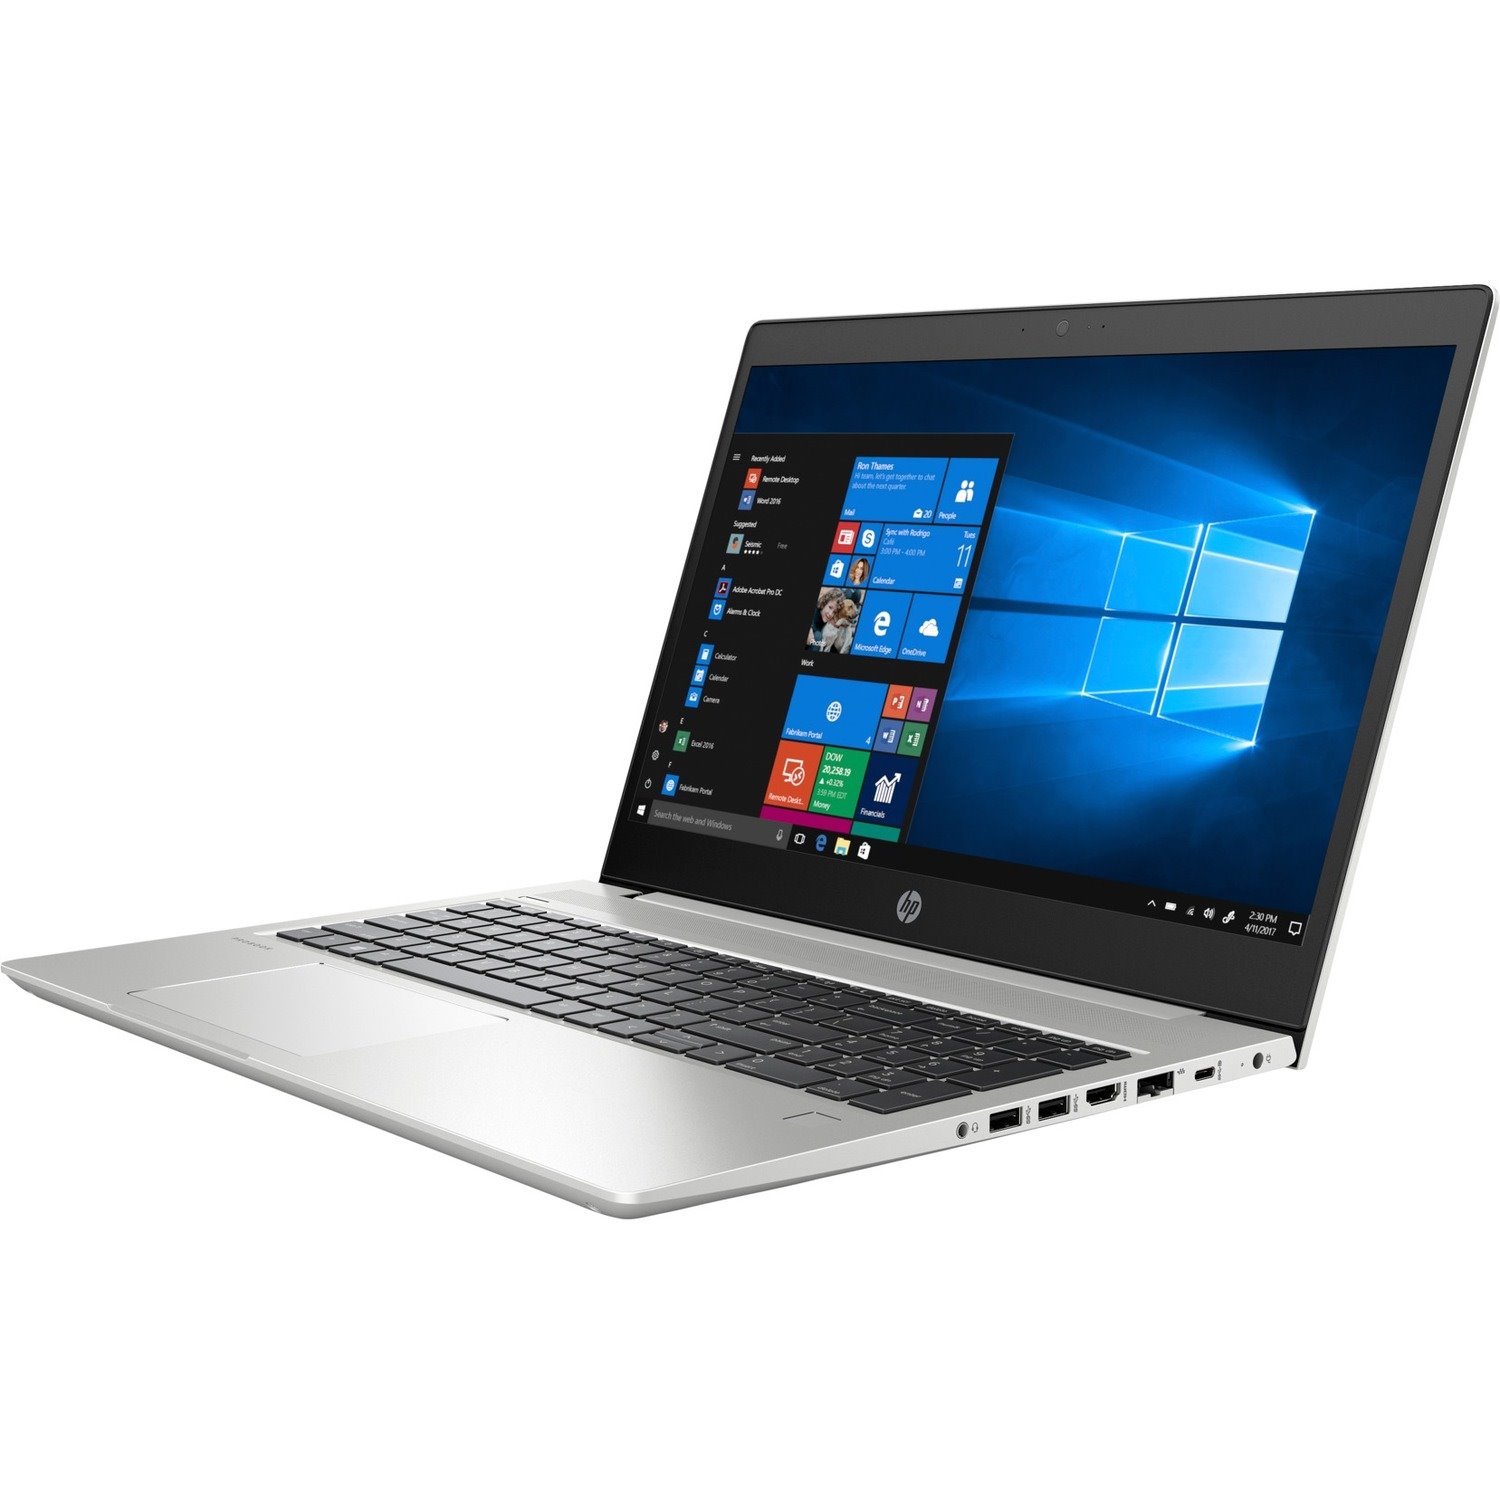 HP ProBook 455 G6 15.6" Notebook - 1920 x 1080 - AMD Ryzen 7 PRO 2700U Quad-core (4 Core) 2.20 GHz - 16 GB Total RAM - 512 GB SSD - Natural Silver